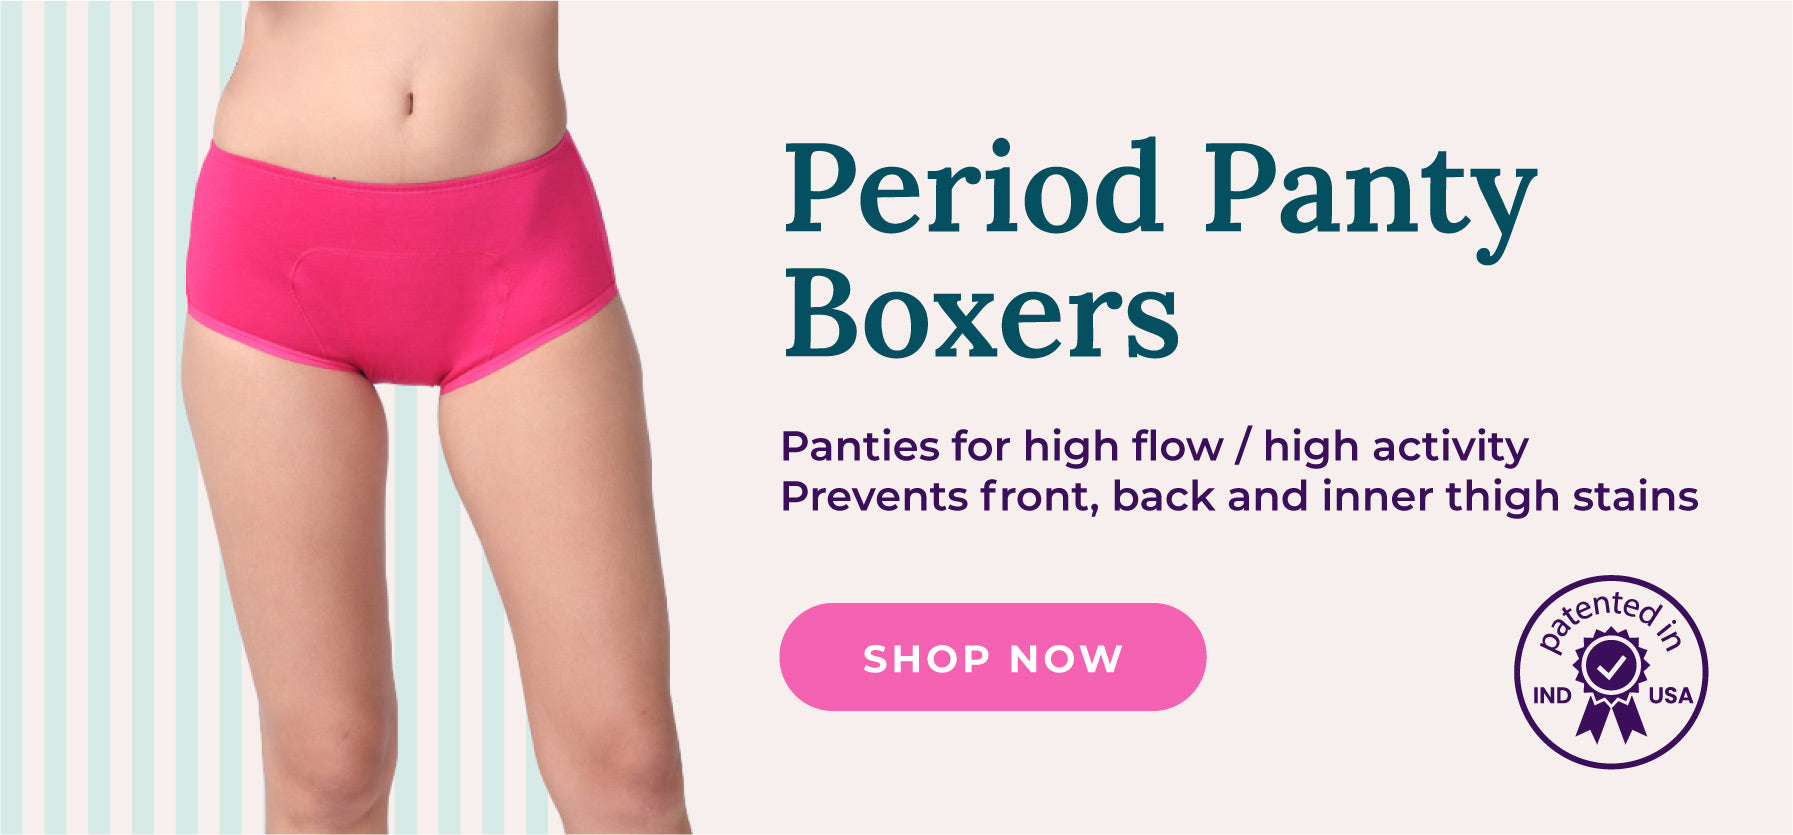 Adira bannner for period panties - boxer fit